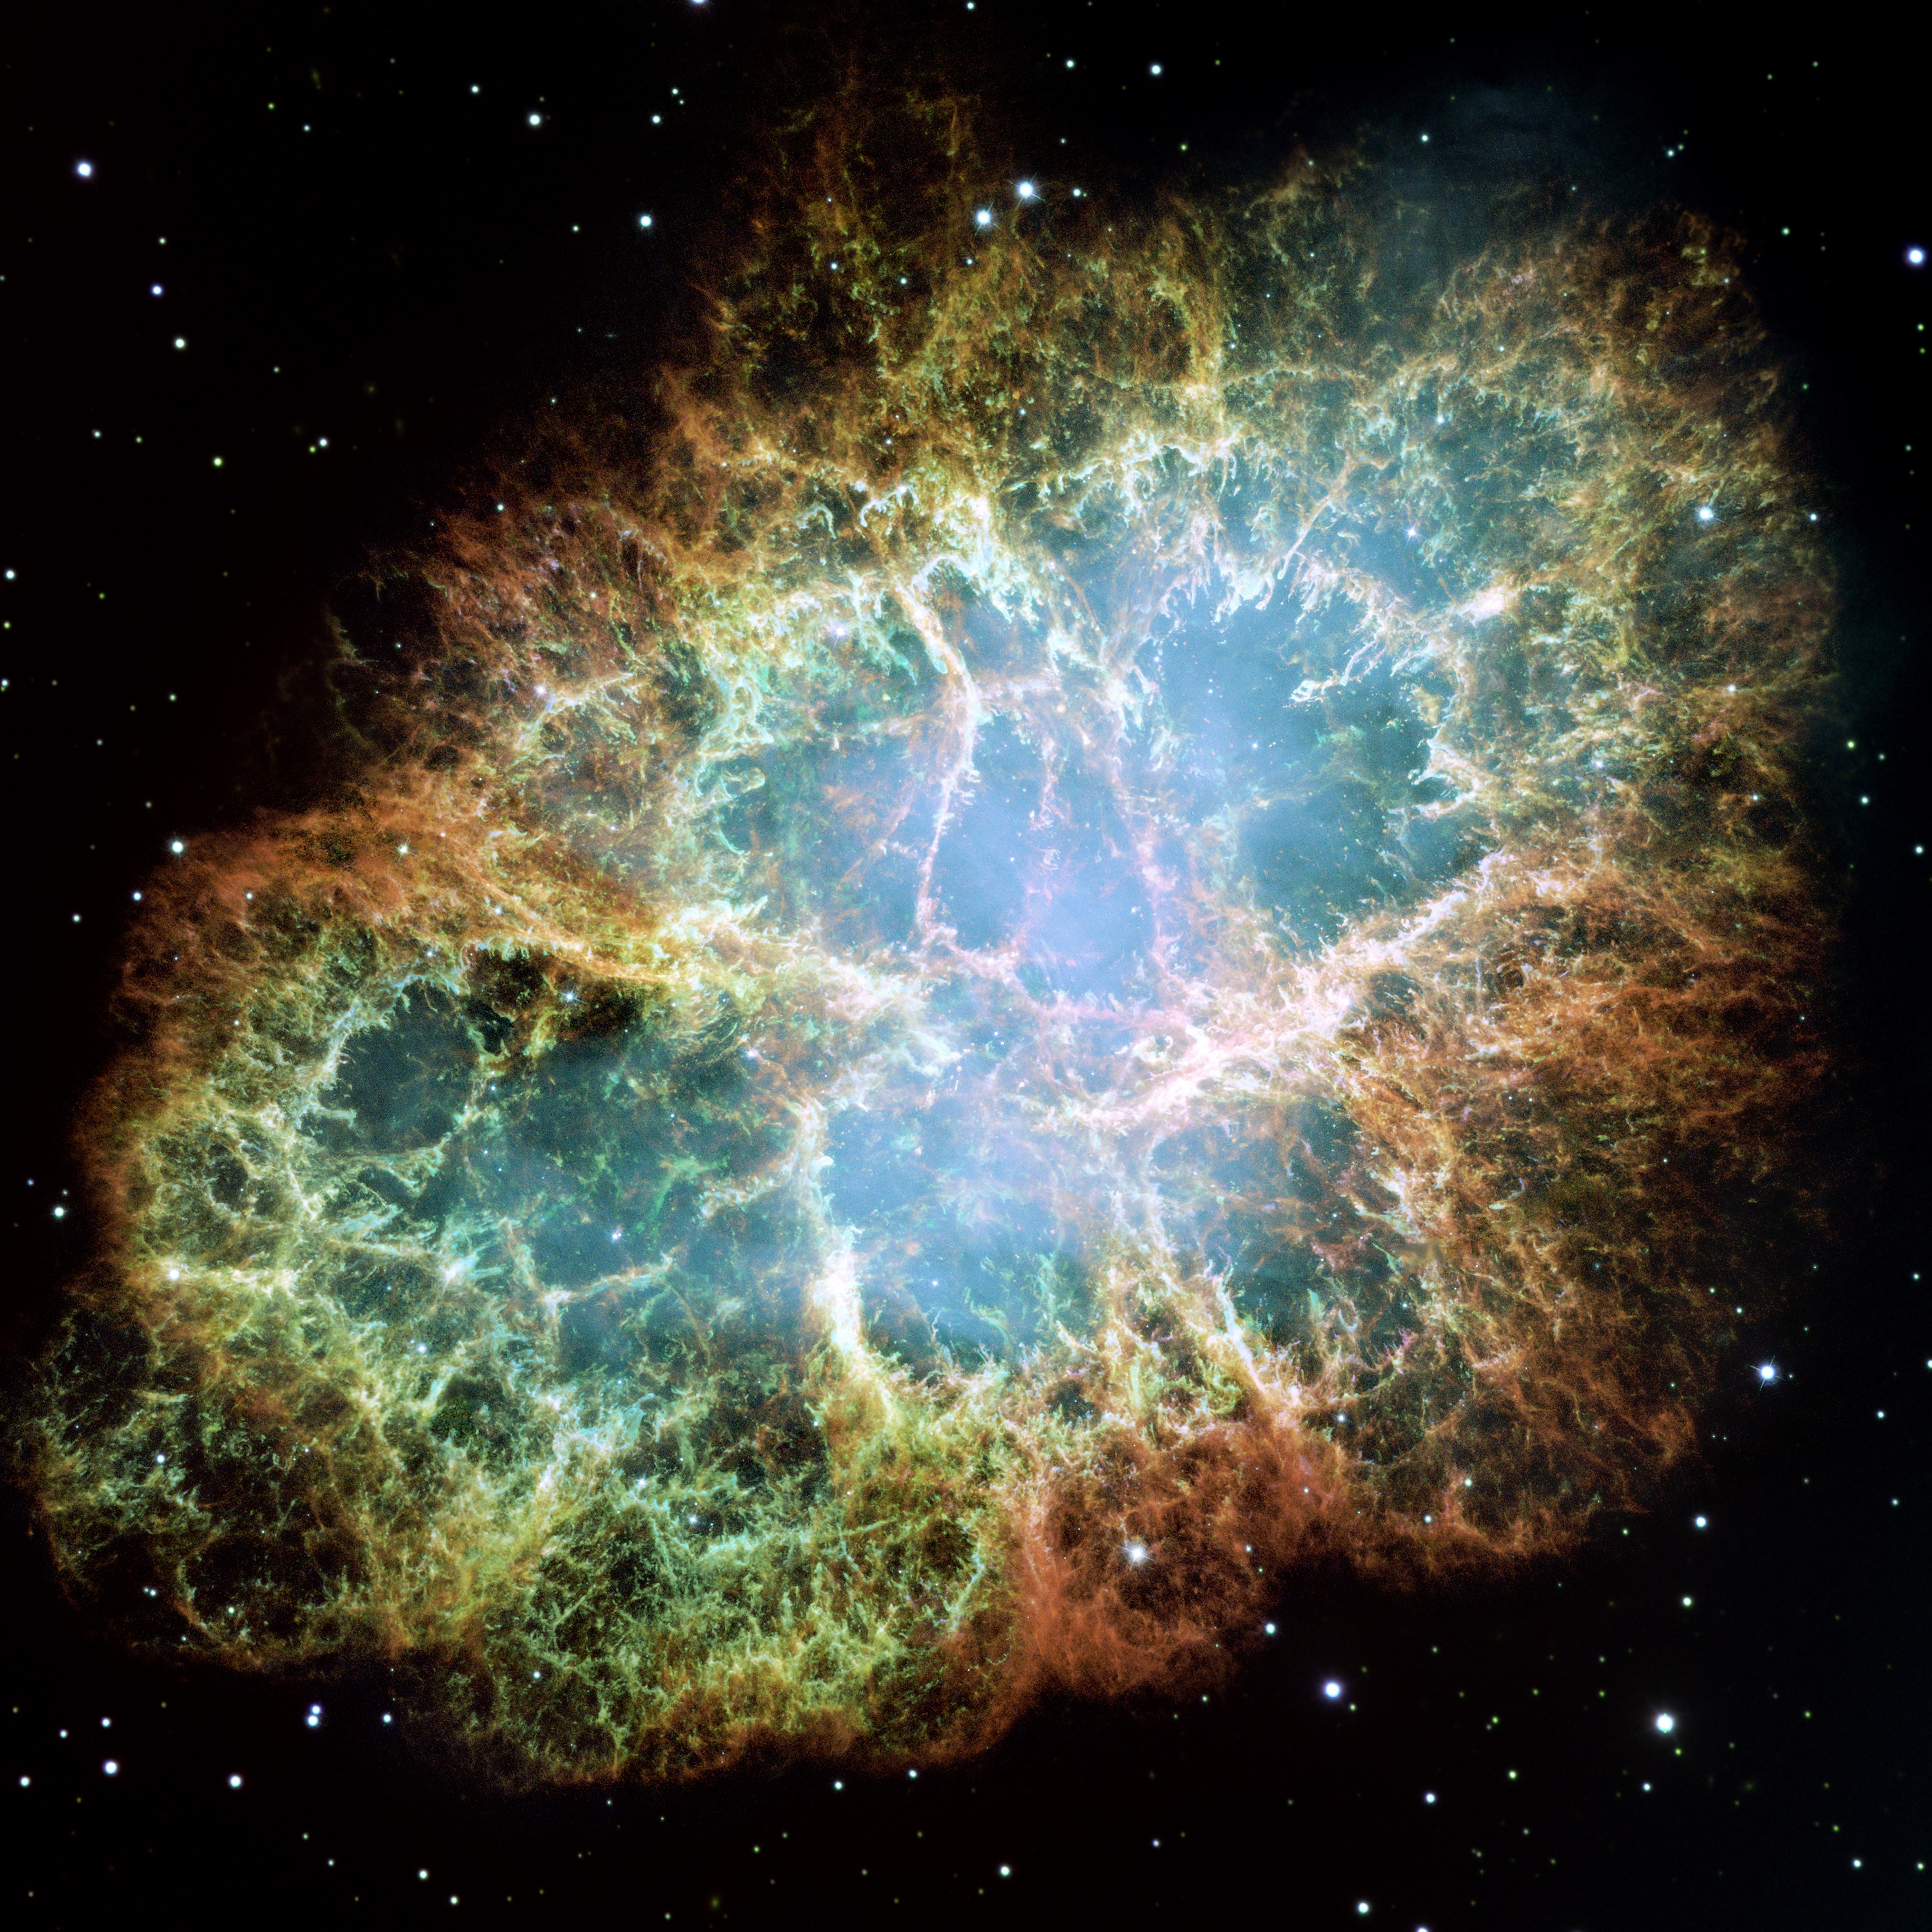 La nébuleuse du Crabe est un des plus spectaculaires rémanents de supernova connu. Elle se situe à environ 6.500 années-lumière de la Terre, dans la constellation du Taureau. © Nasa, ESA, J. Hester et A. Loll (Arizona State University)